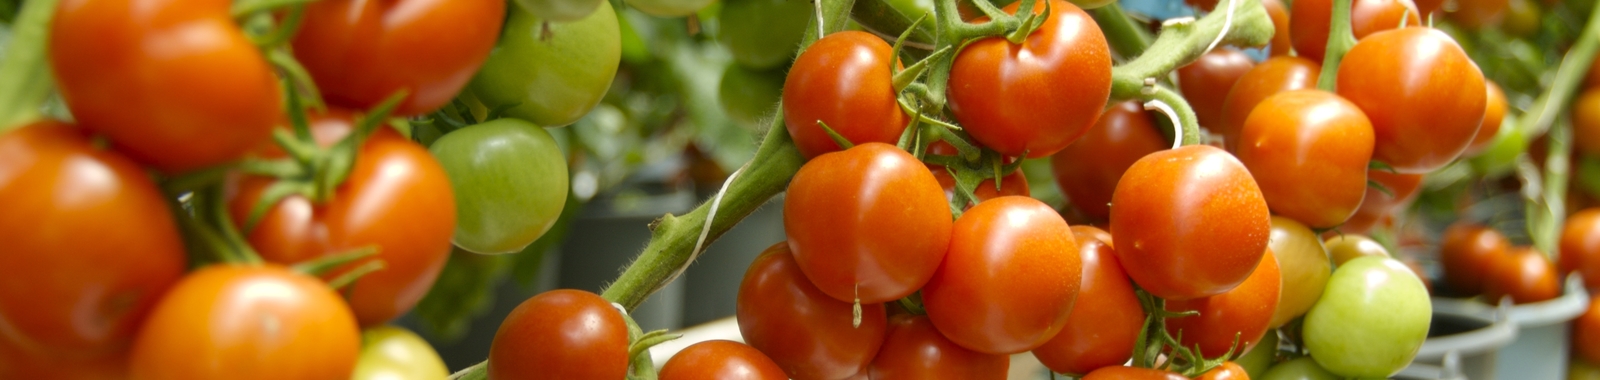 Influir en el aspecto físico del tomate